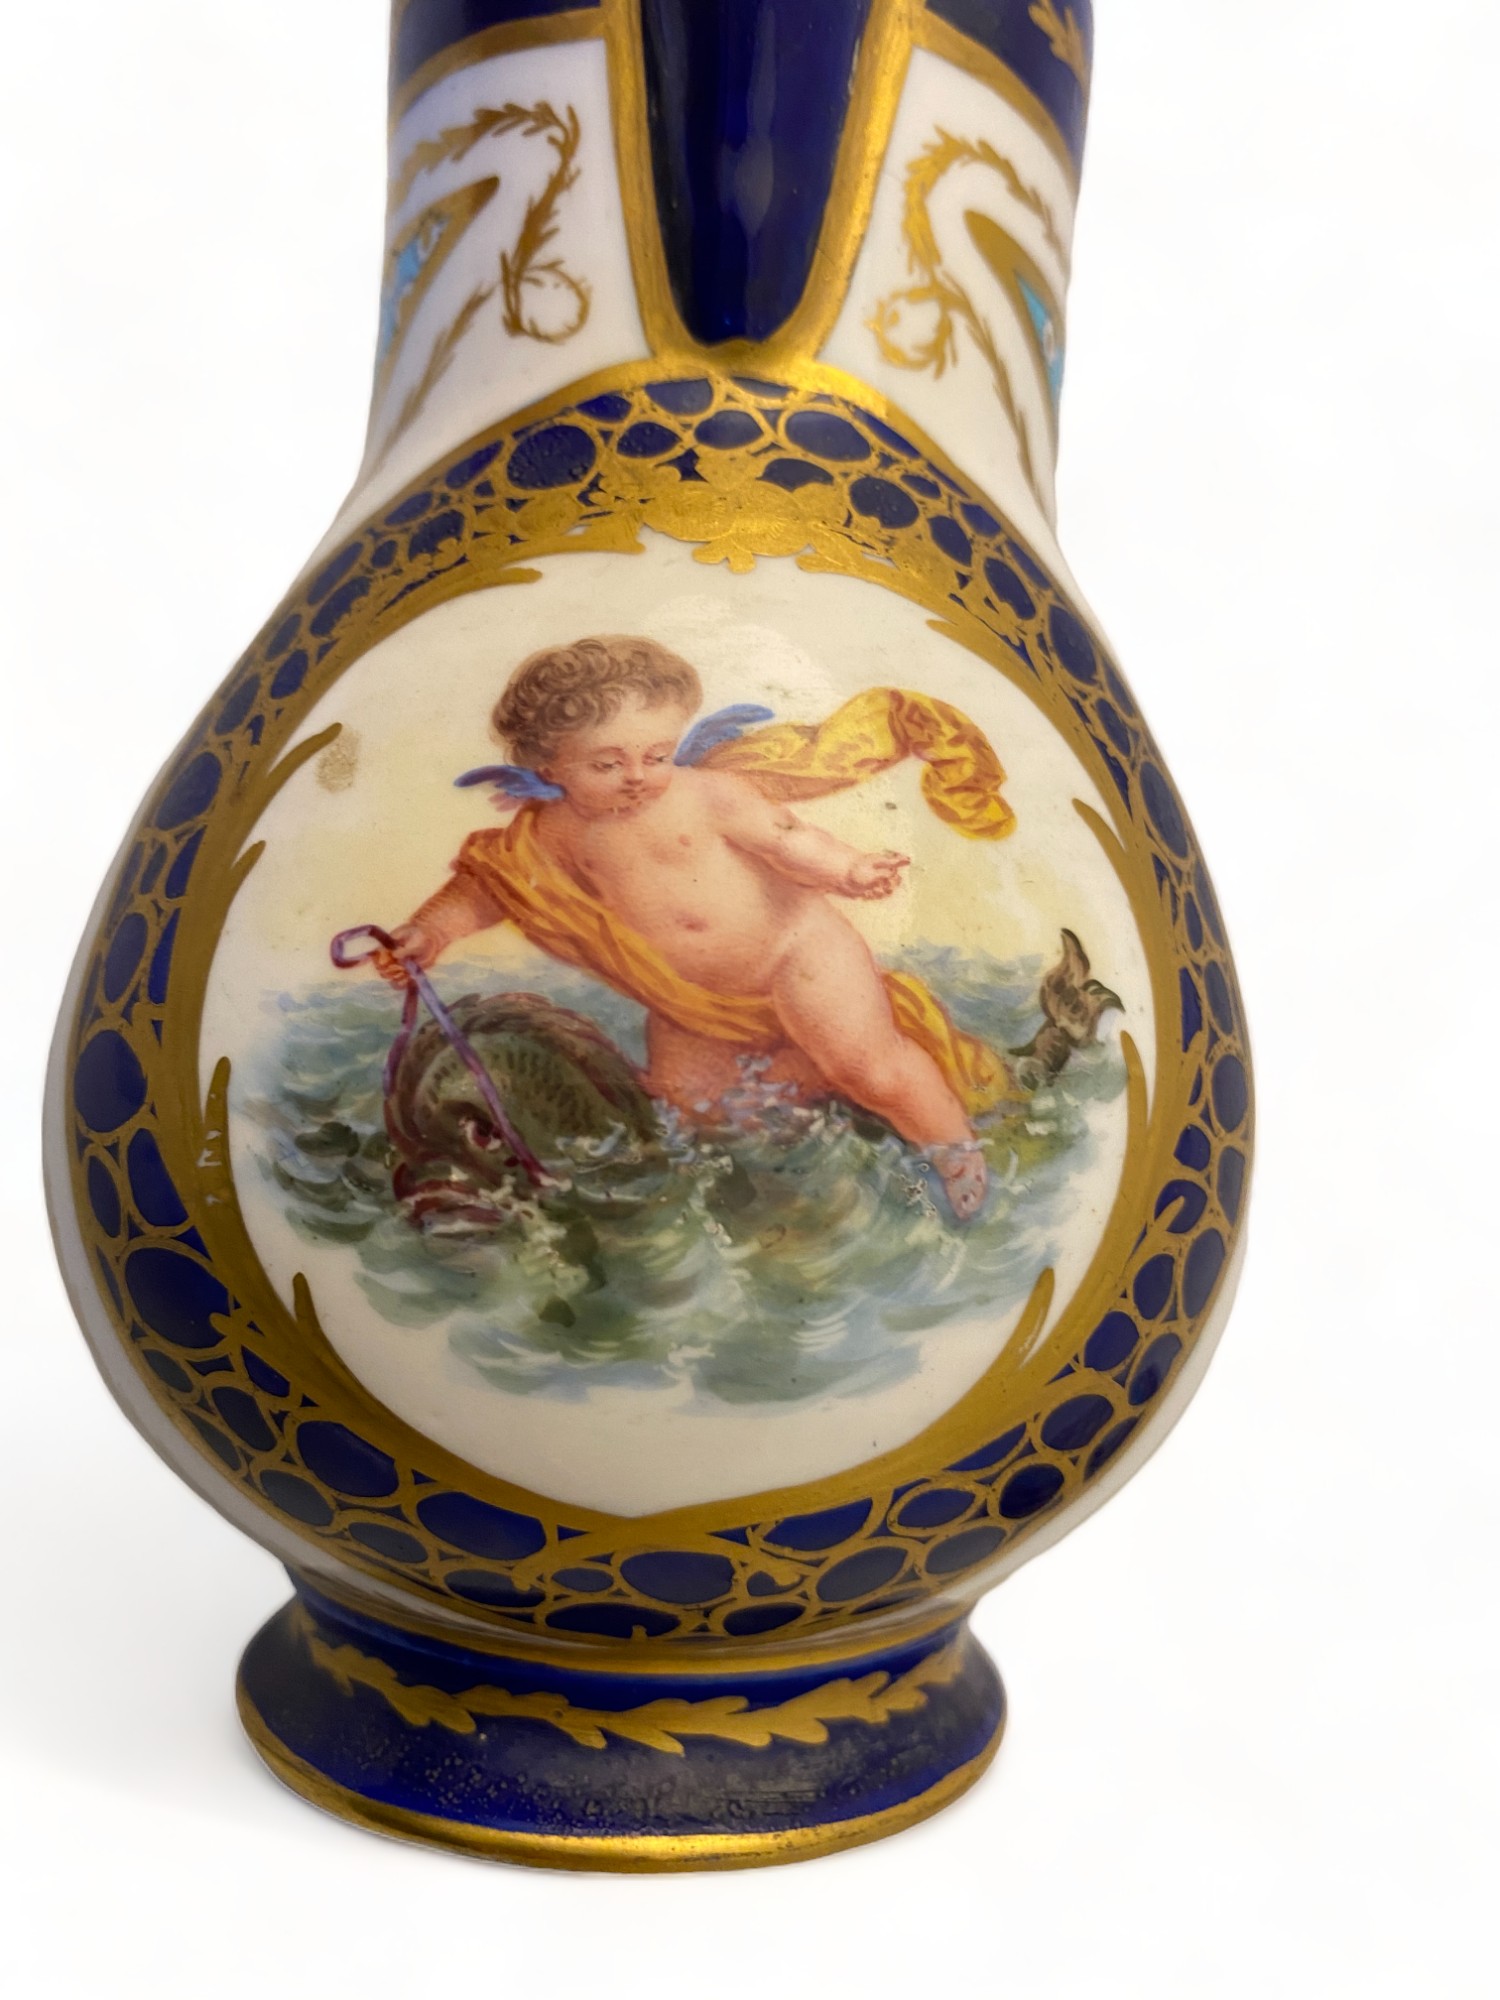 A Sèvres bleu céleste water jug and cover (pot a l'eau, fourth size), 18th century - Image 8 of 9